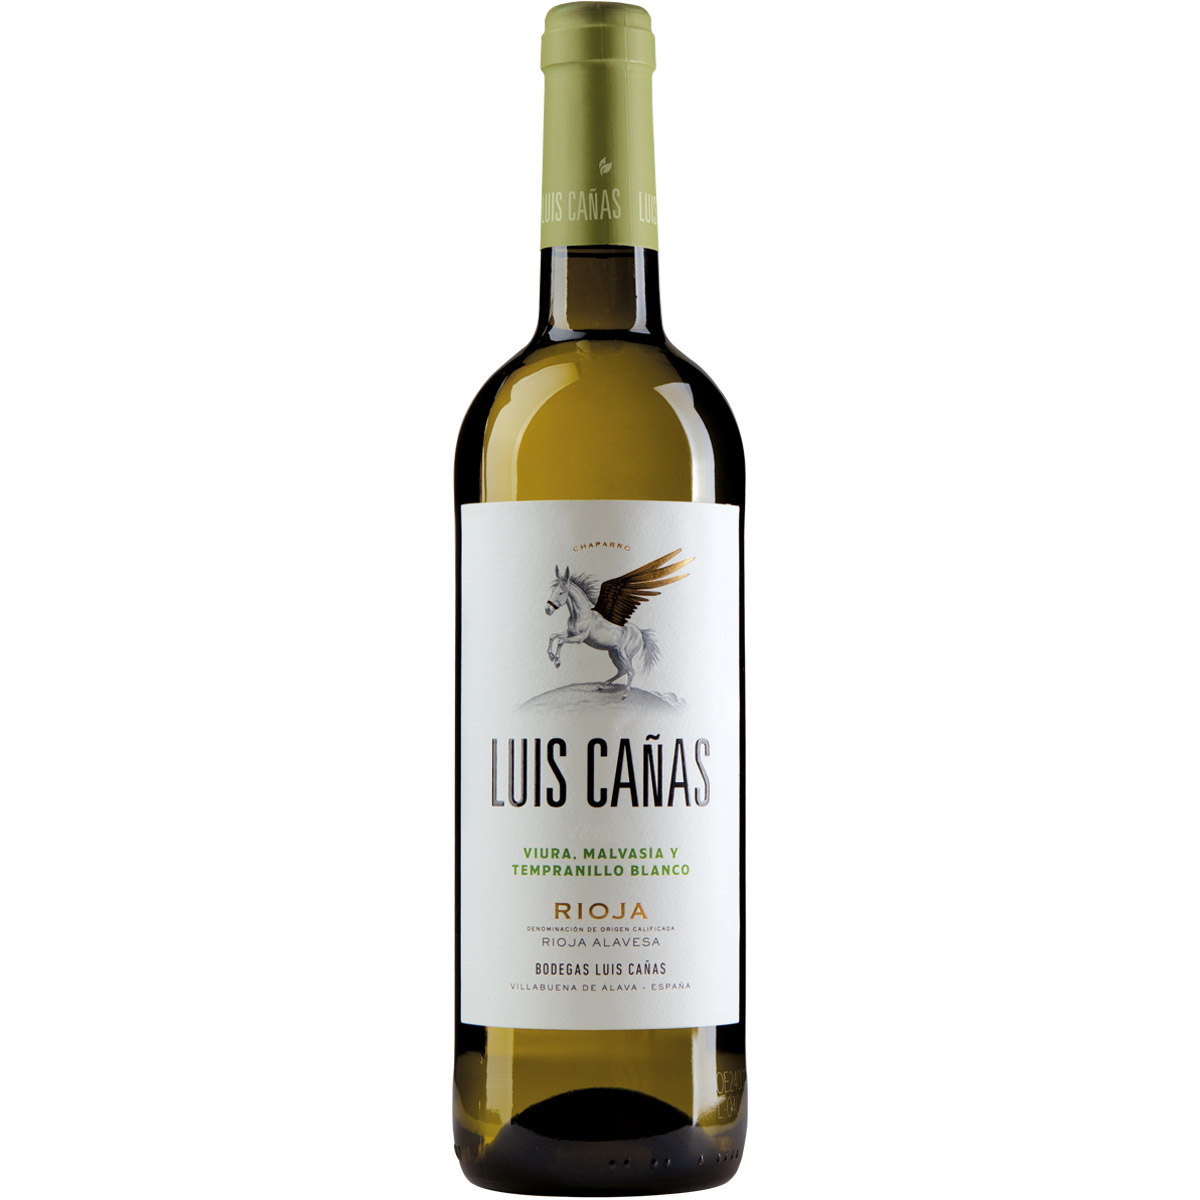 Luis Canas Blanco Rioja DOCa